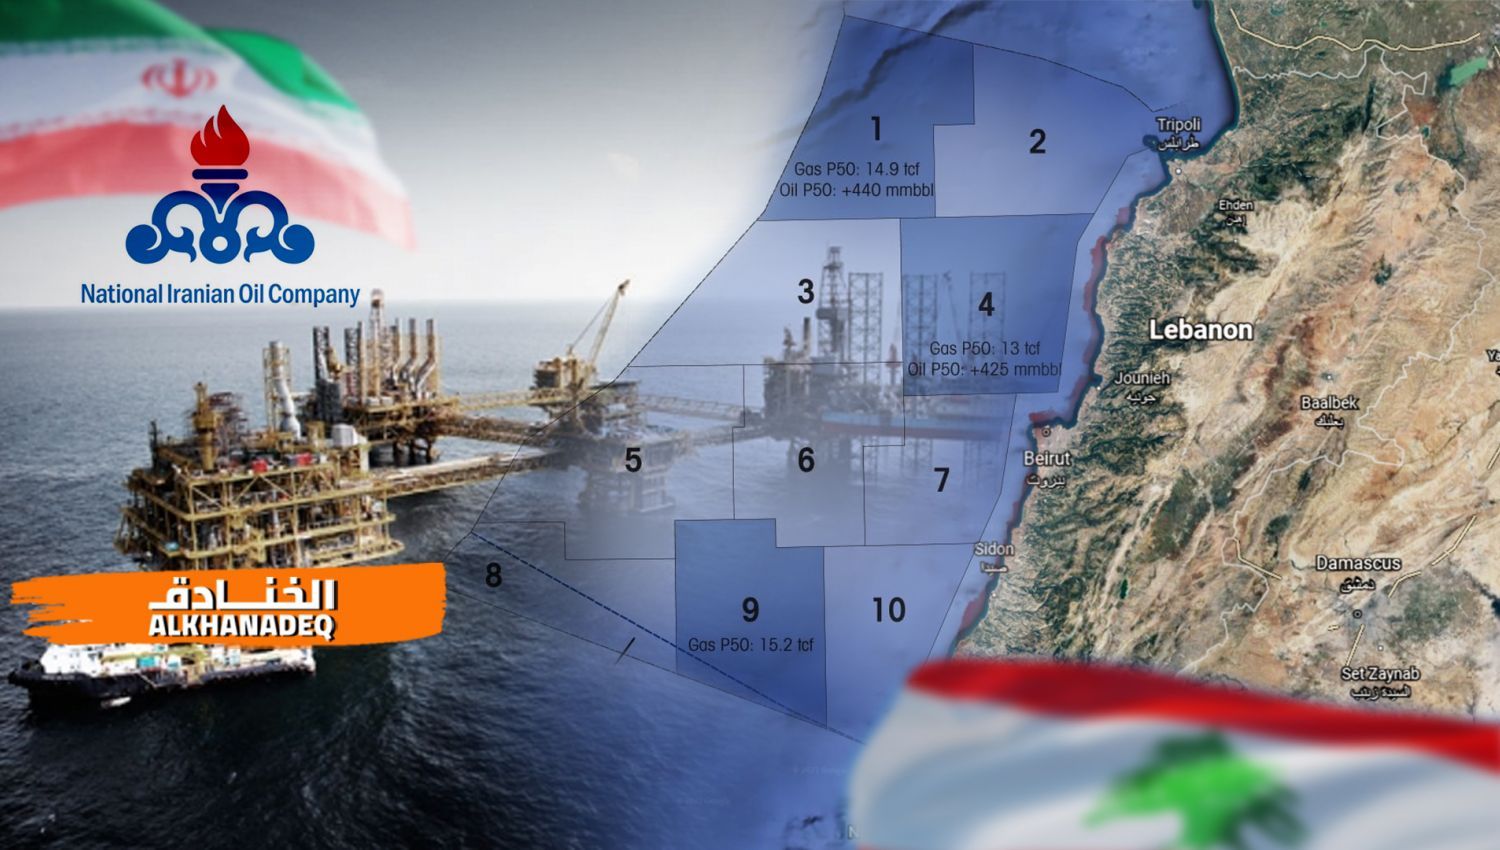 شاهد | اهم الشركات الايرانية للتنقيب عن النفط